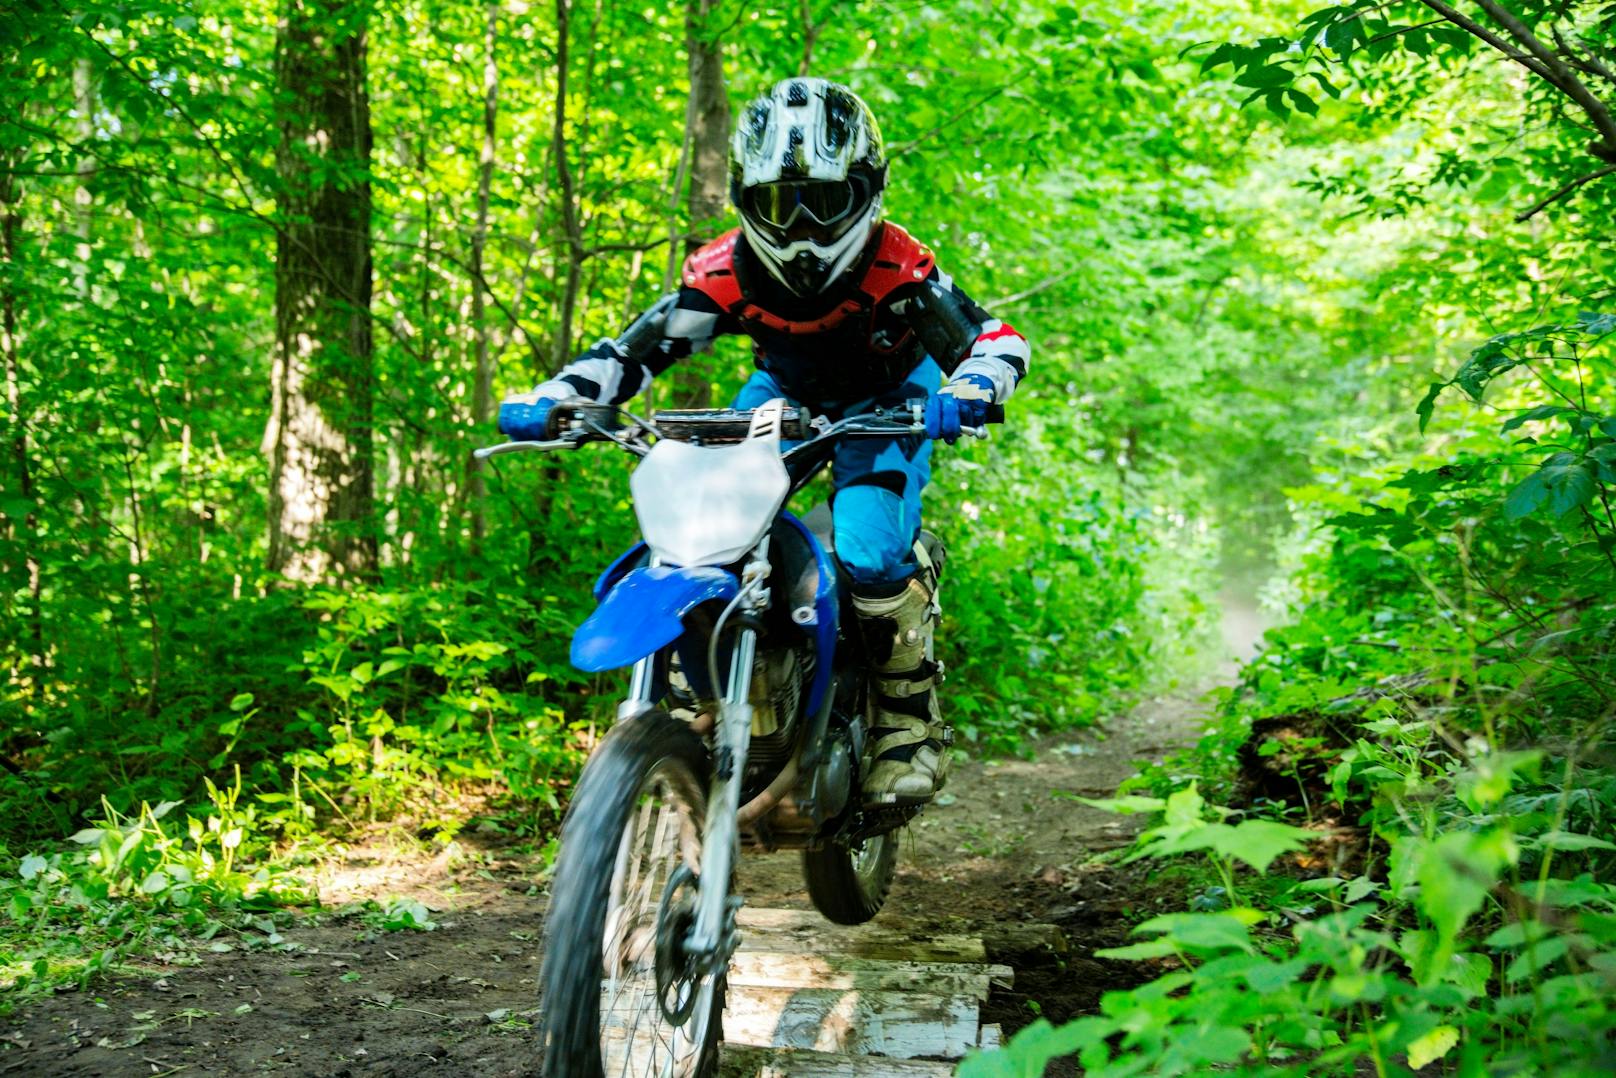 14-Jähriger kollidiert mit Motocross gegen Baum